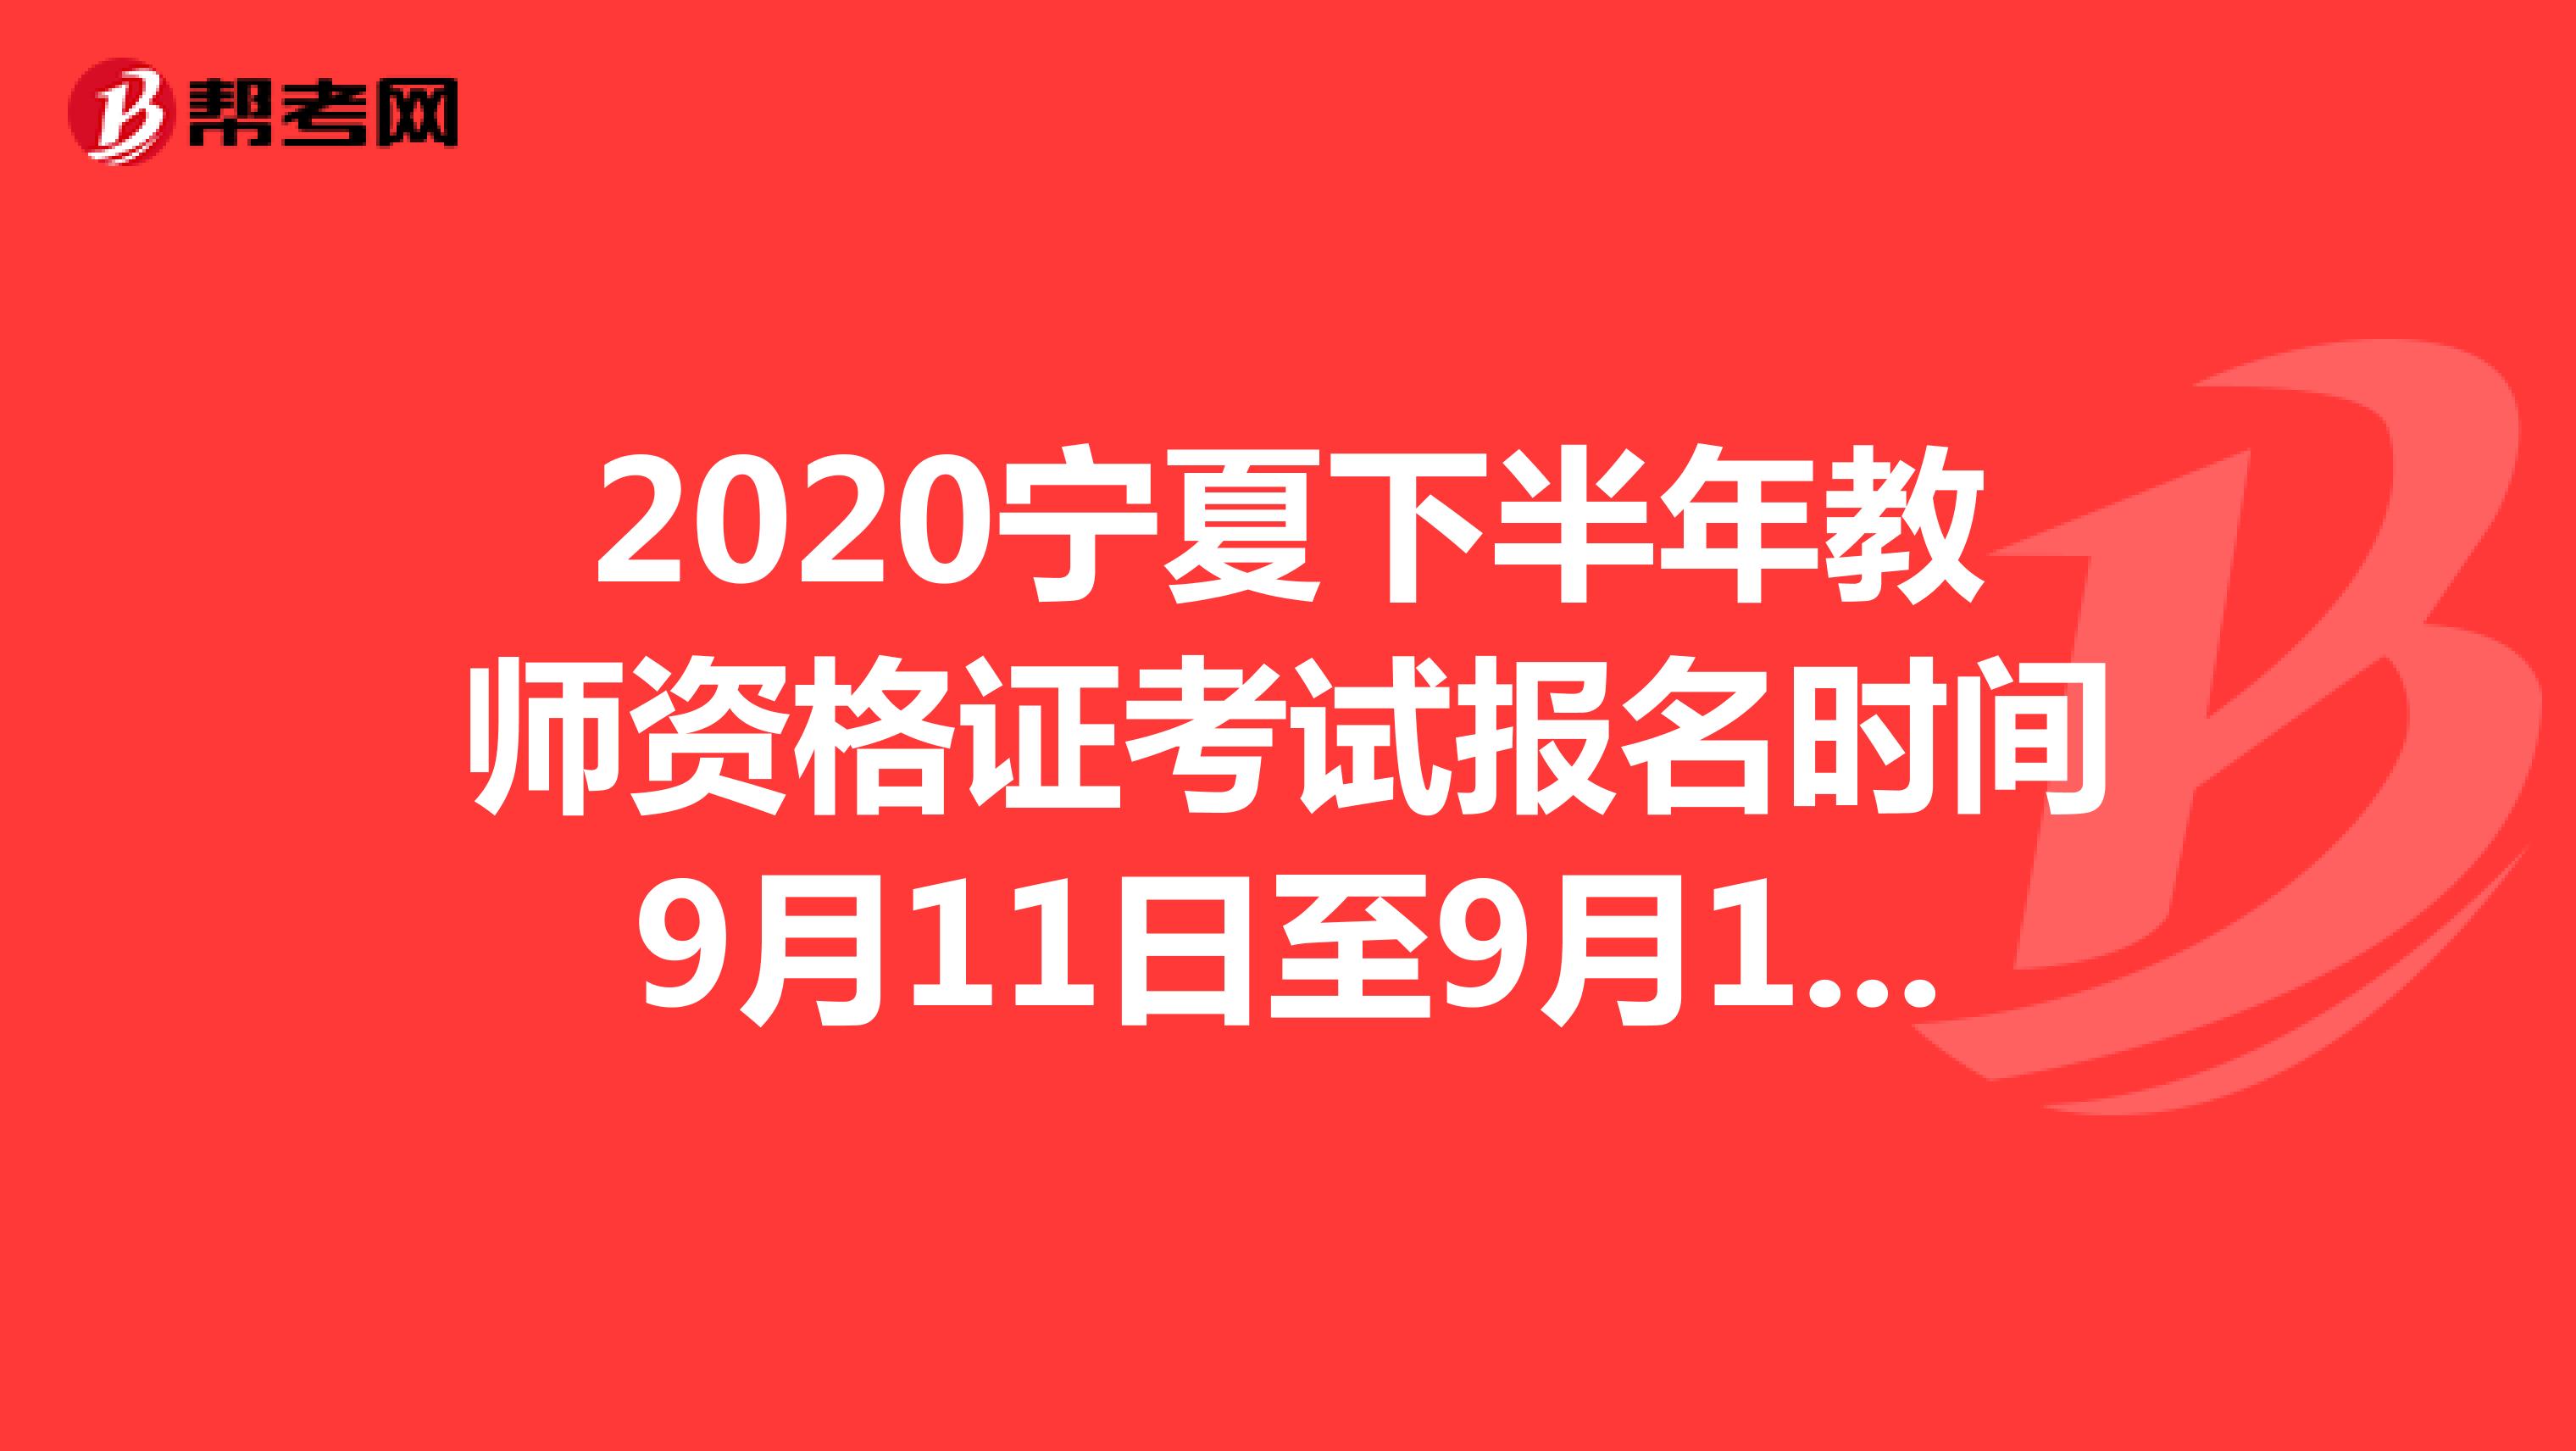 2020宁夏下半年教师资格证考试报名时间9月11日至9月14日